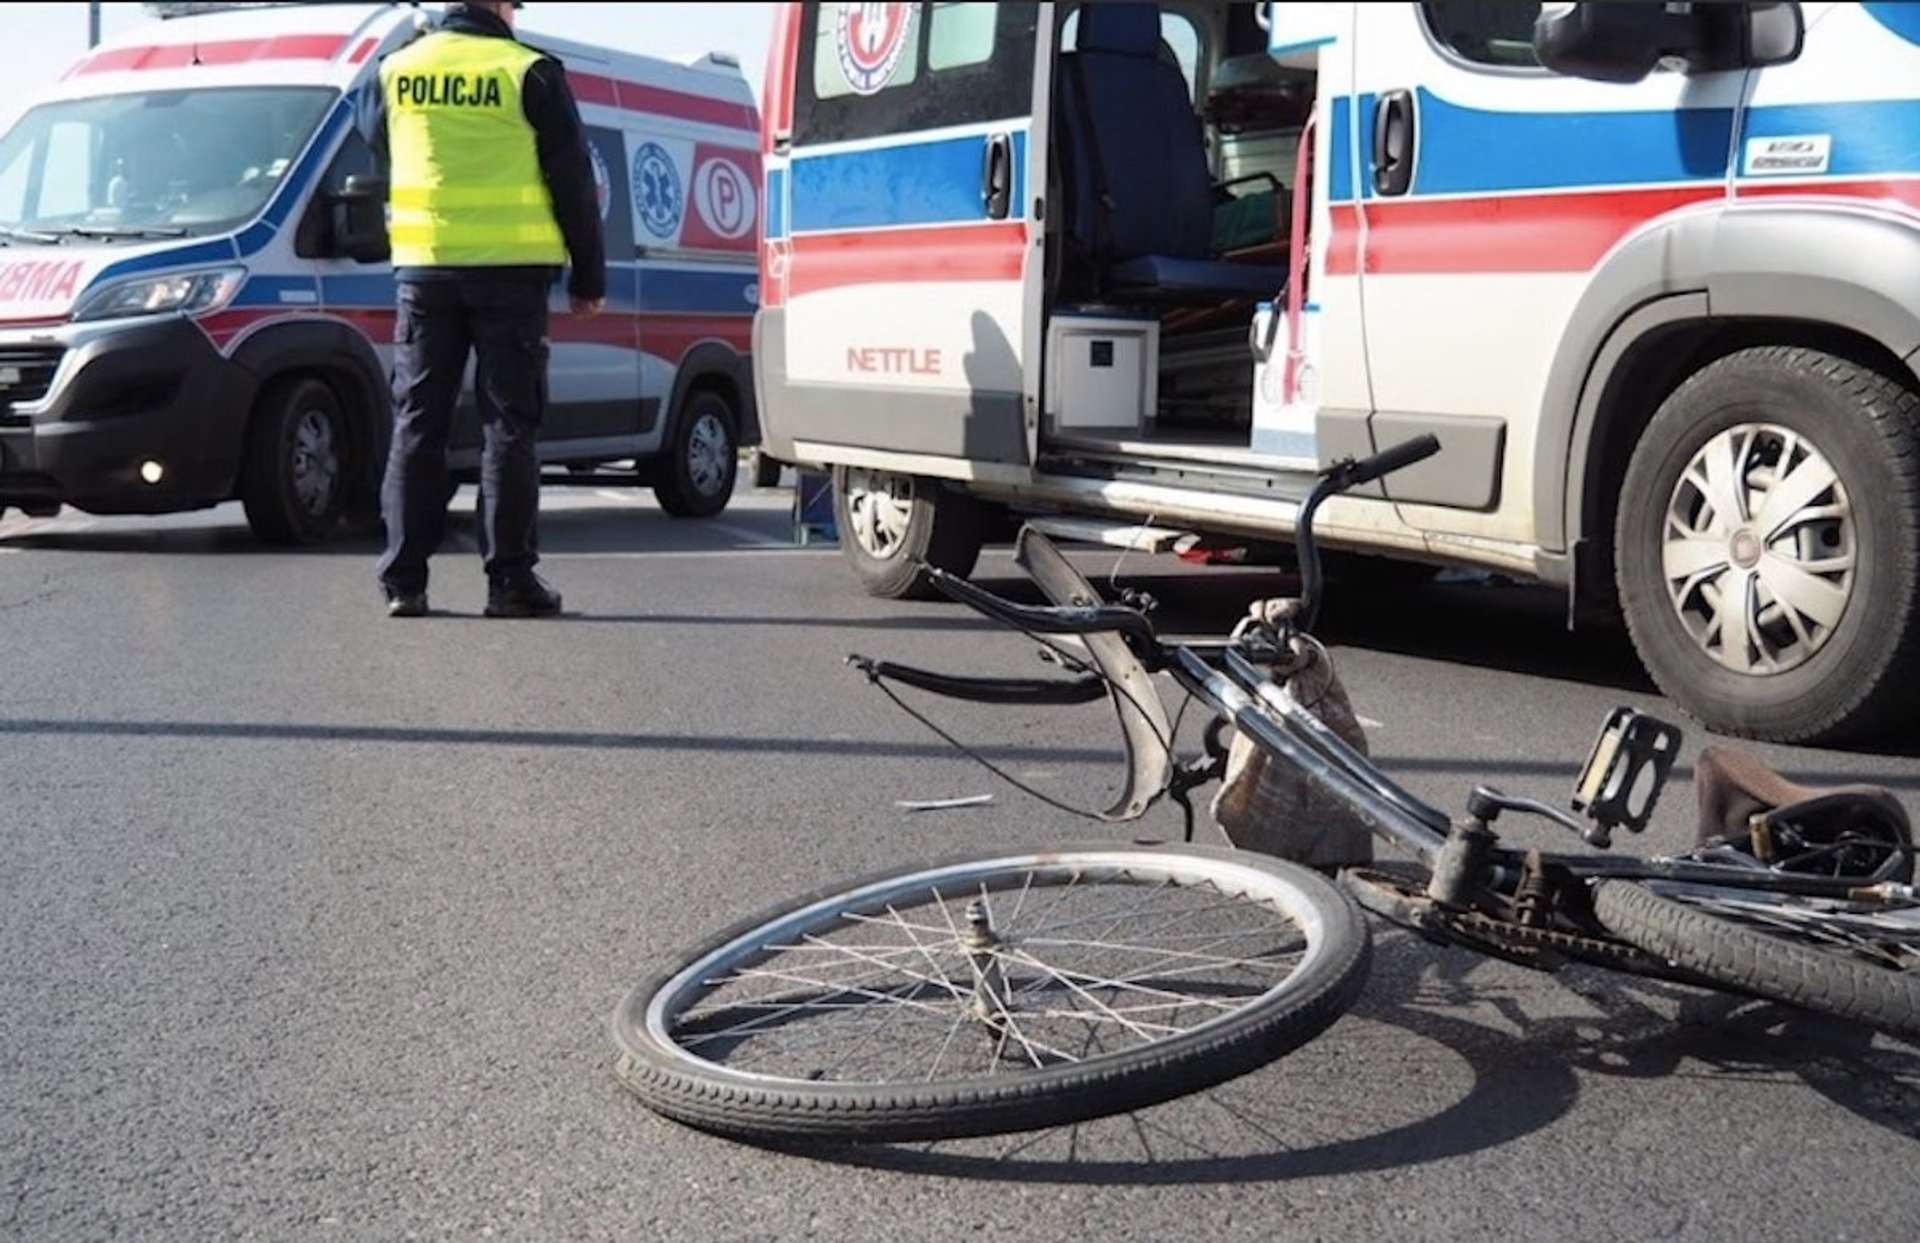 policja karetka rower na drodze